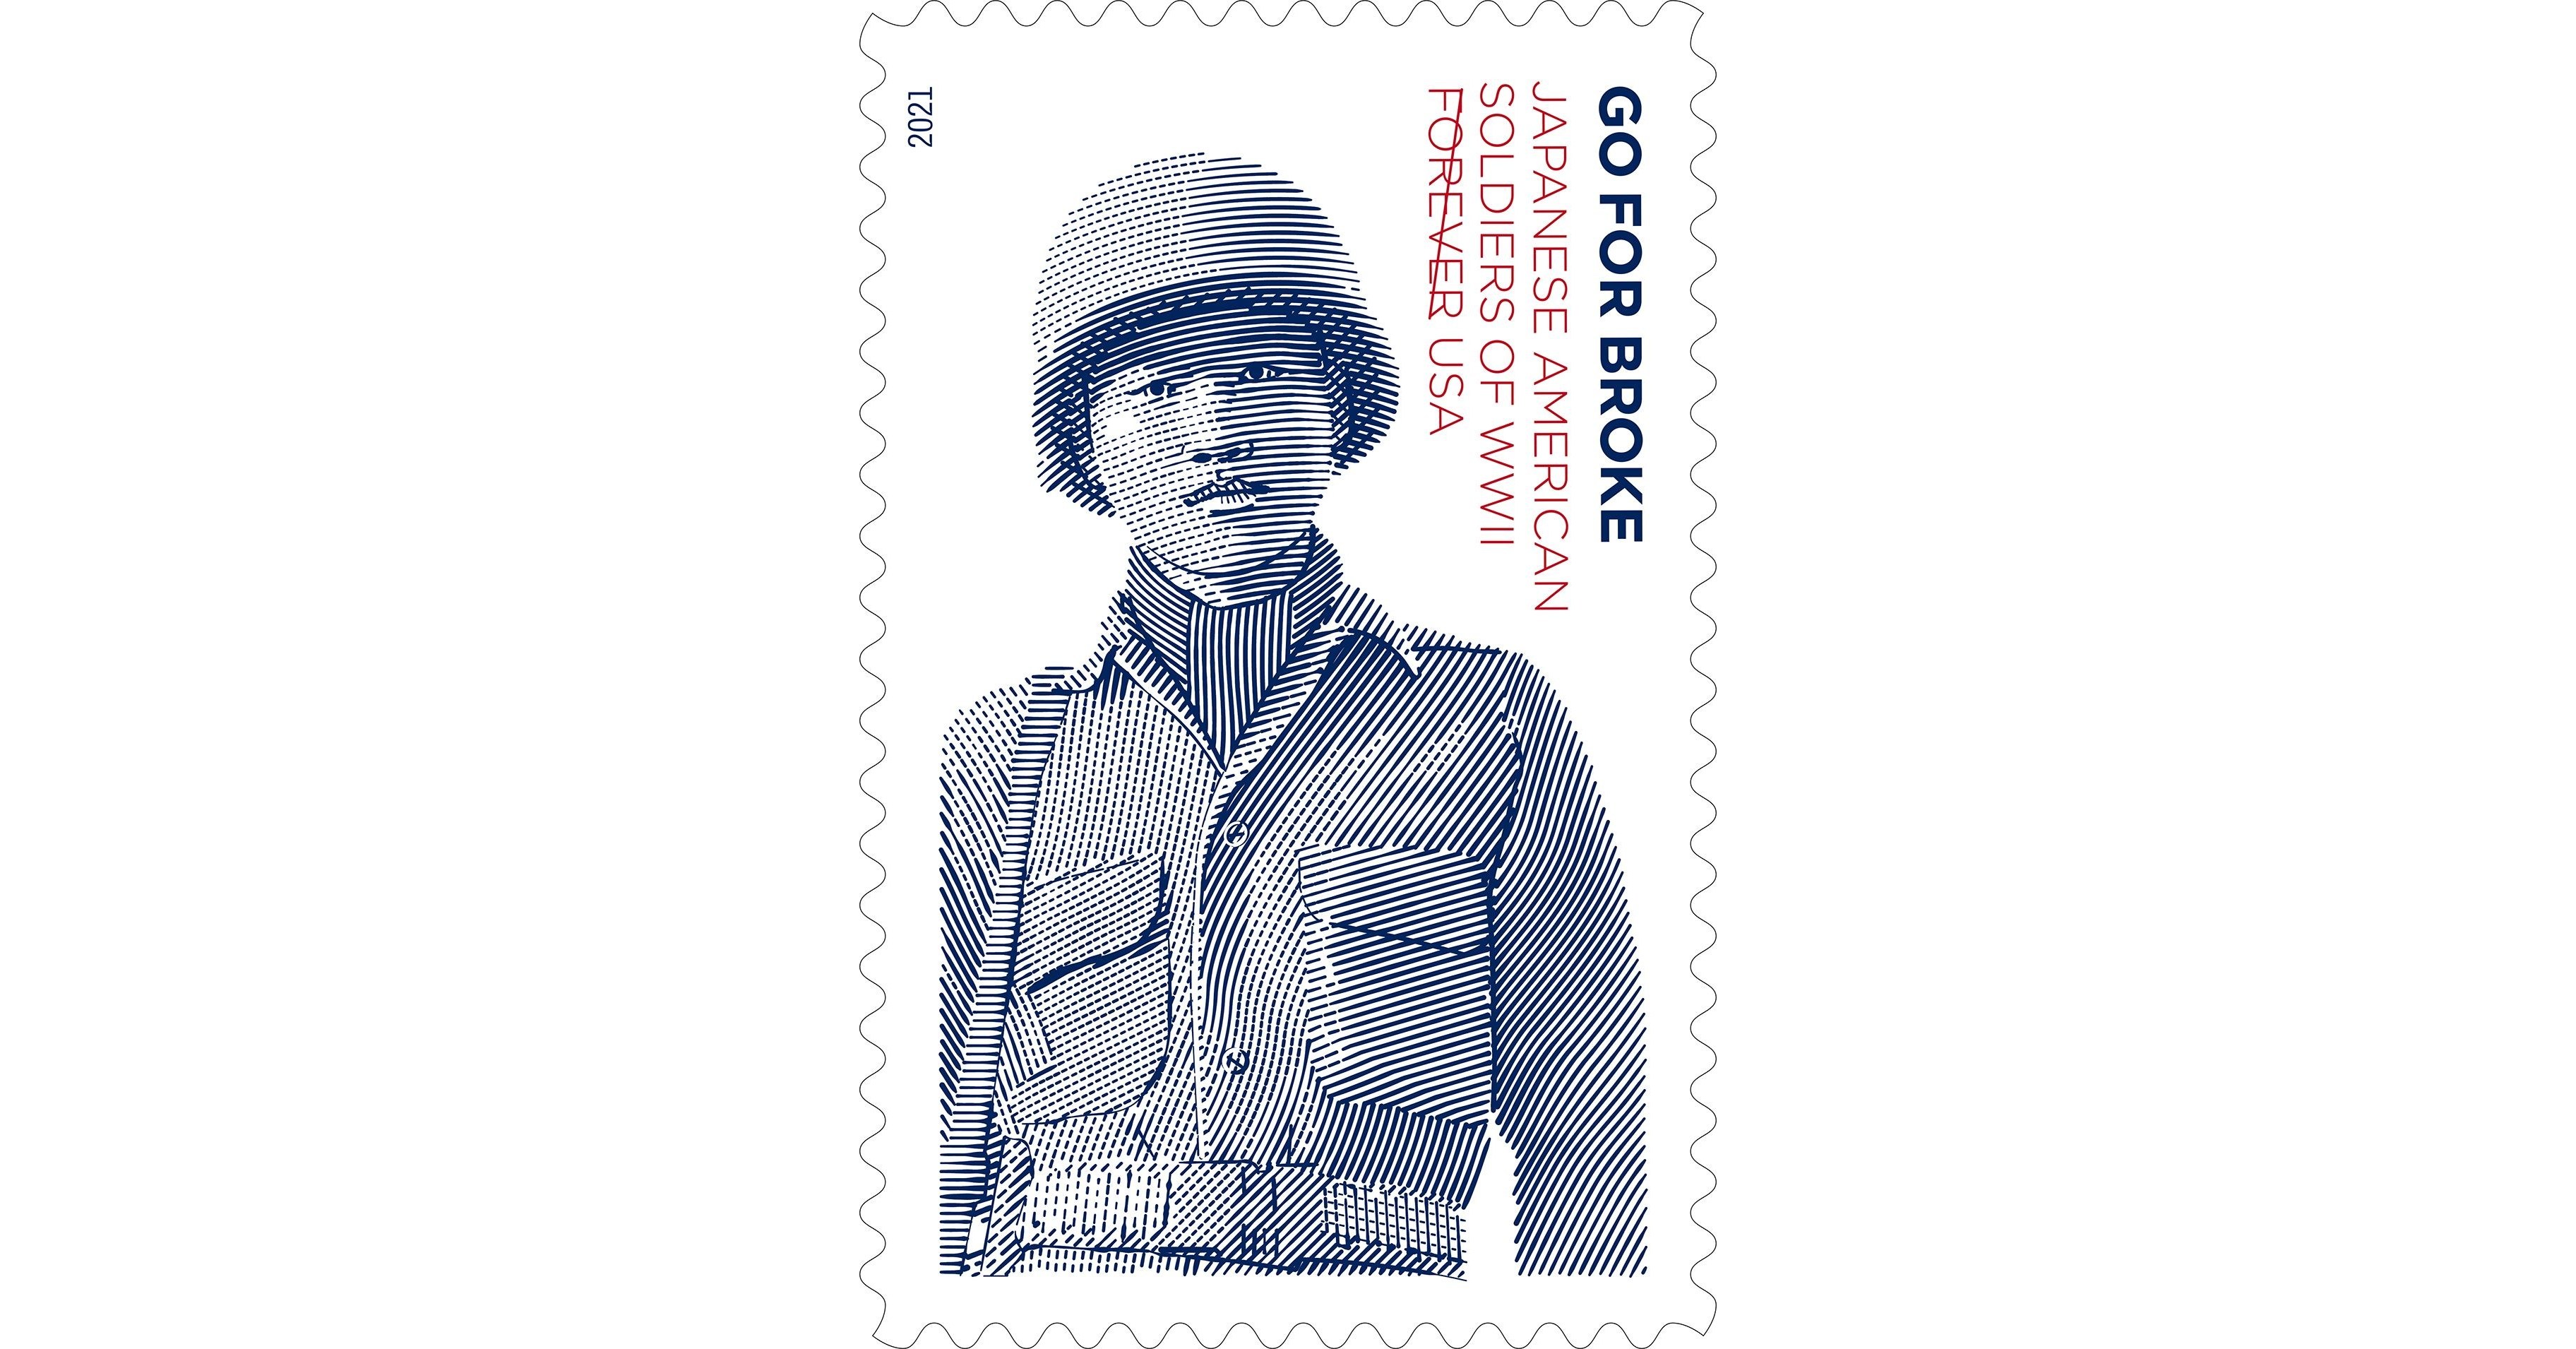 Go For Broke: World War II Forever Stamp Honors Japanese American